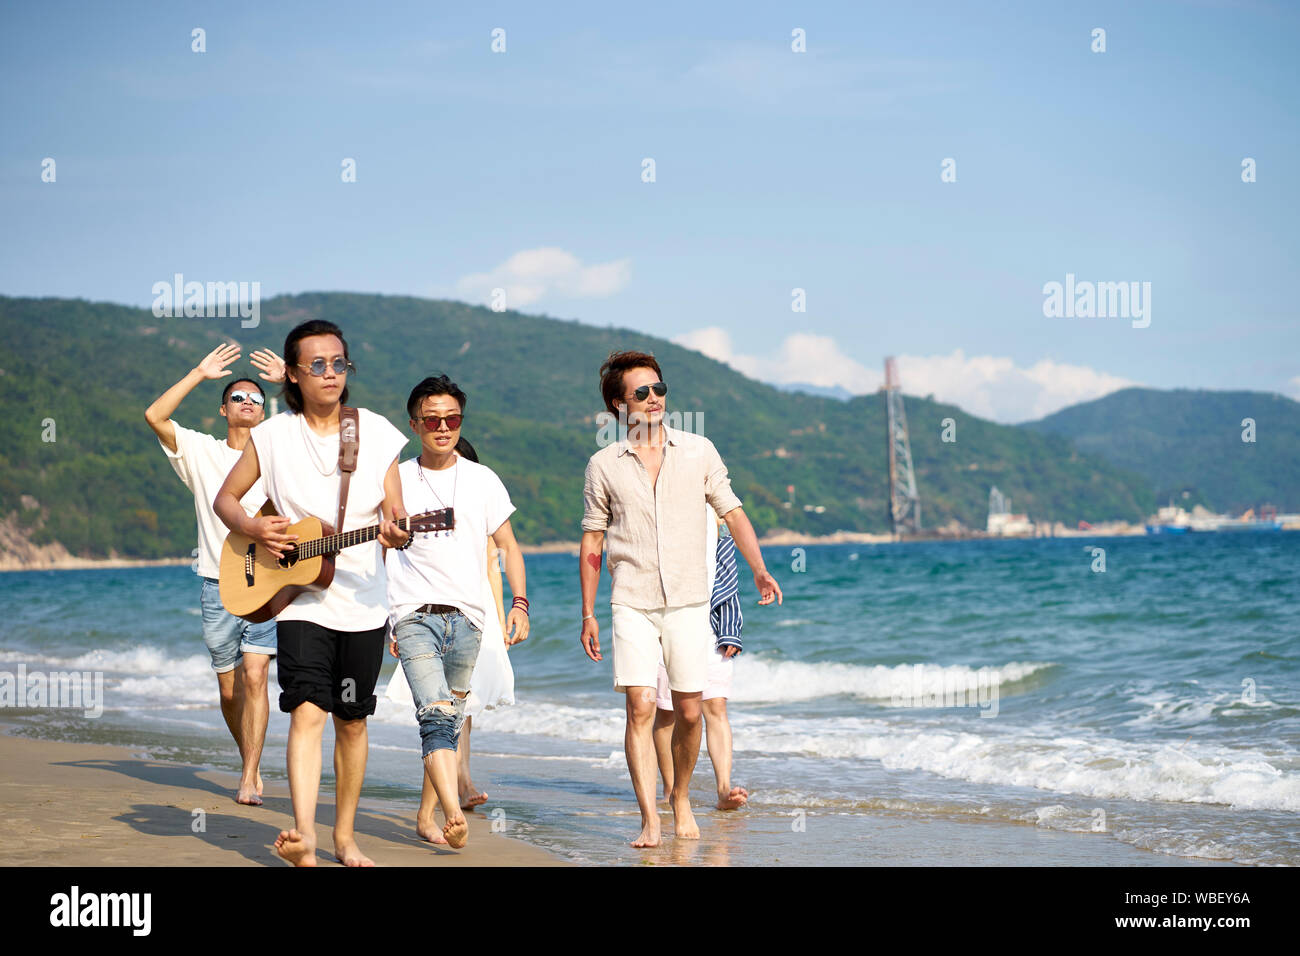 Grupo de jóvenes adultos de Asia hombres caminando en la playa tocando la guitarra Foto de stock